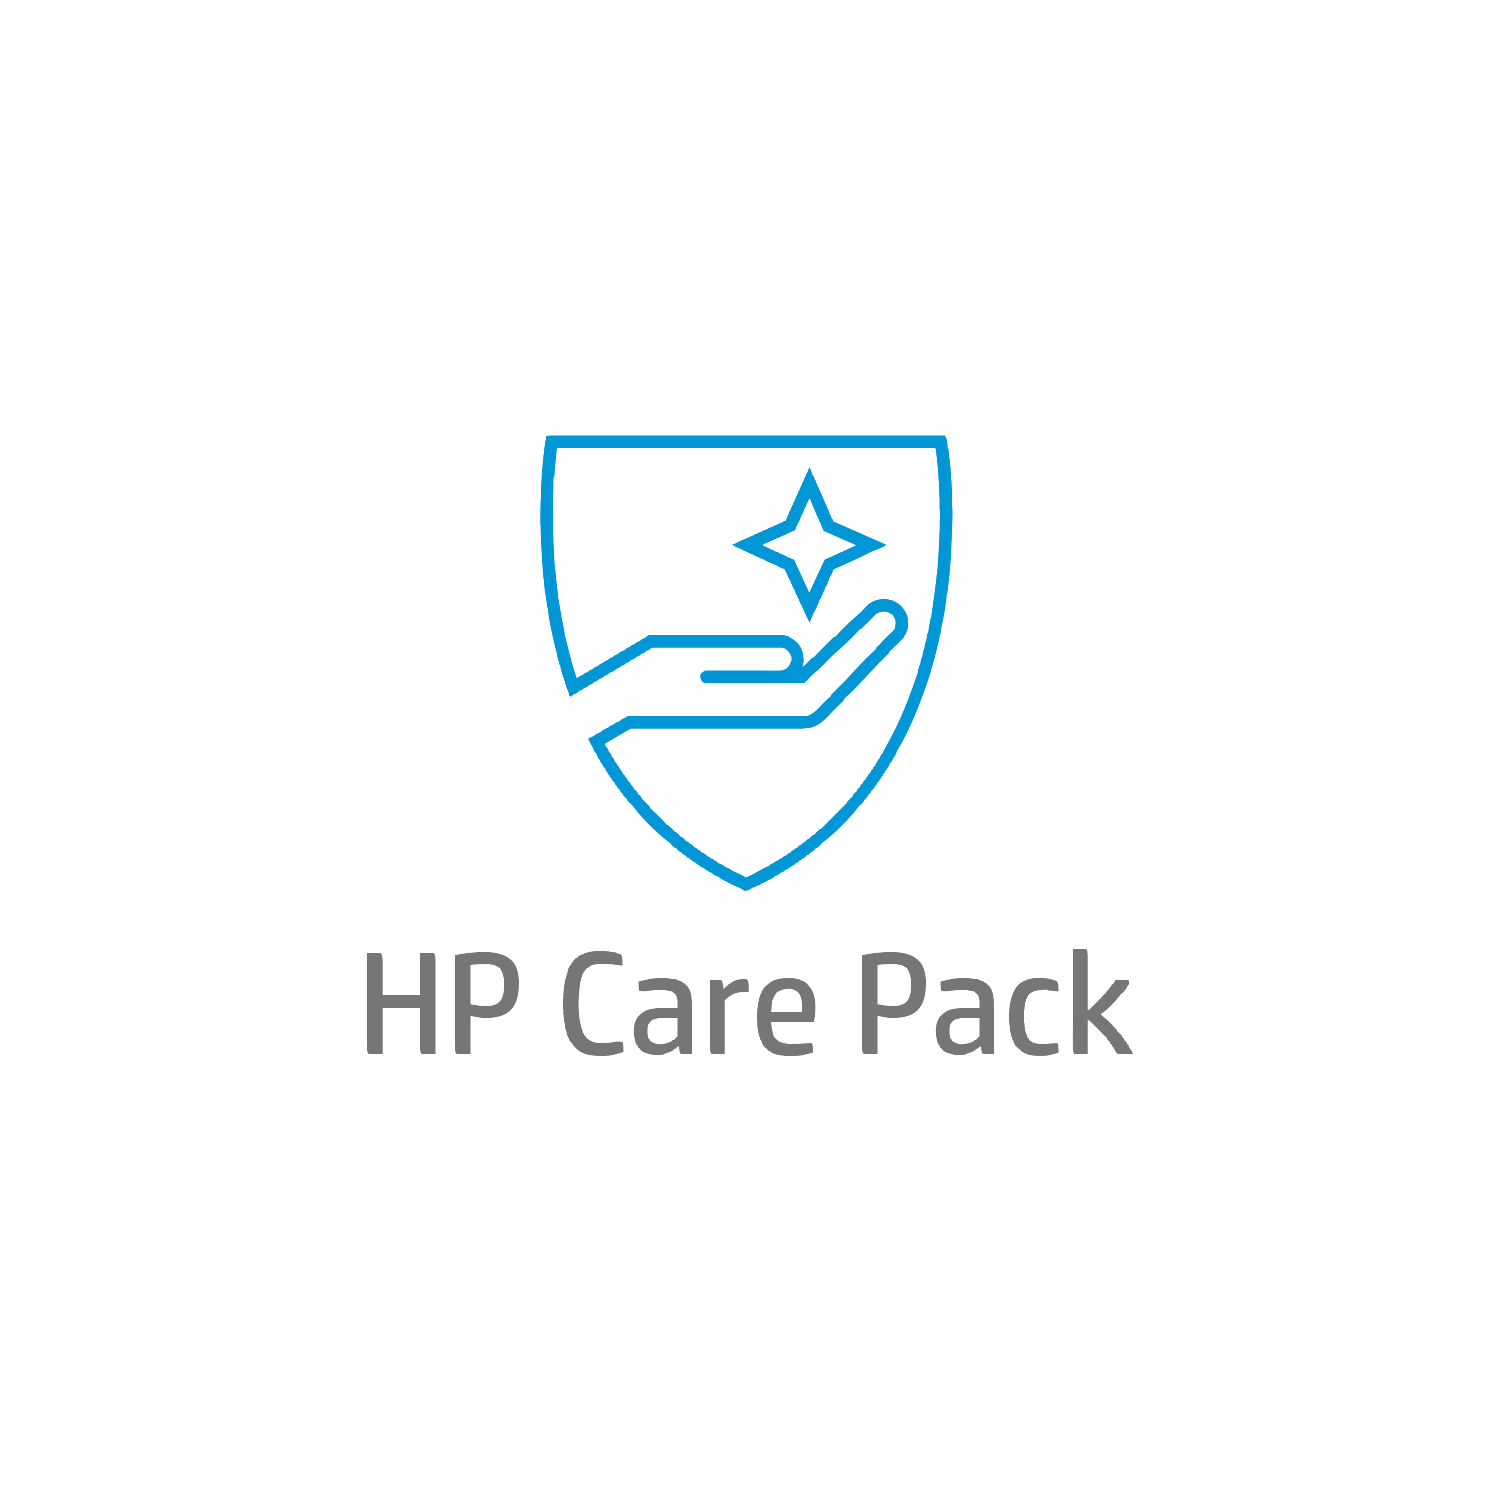 Bild von HP 3 Jahre Active Care Hardware-Support vor Ort am nächsten Arbeitstag mit Einbehaltung defekter Medien für Desktops - 1 Lizenz(en) - 3 Jahr(e)